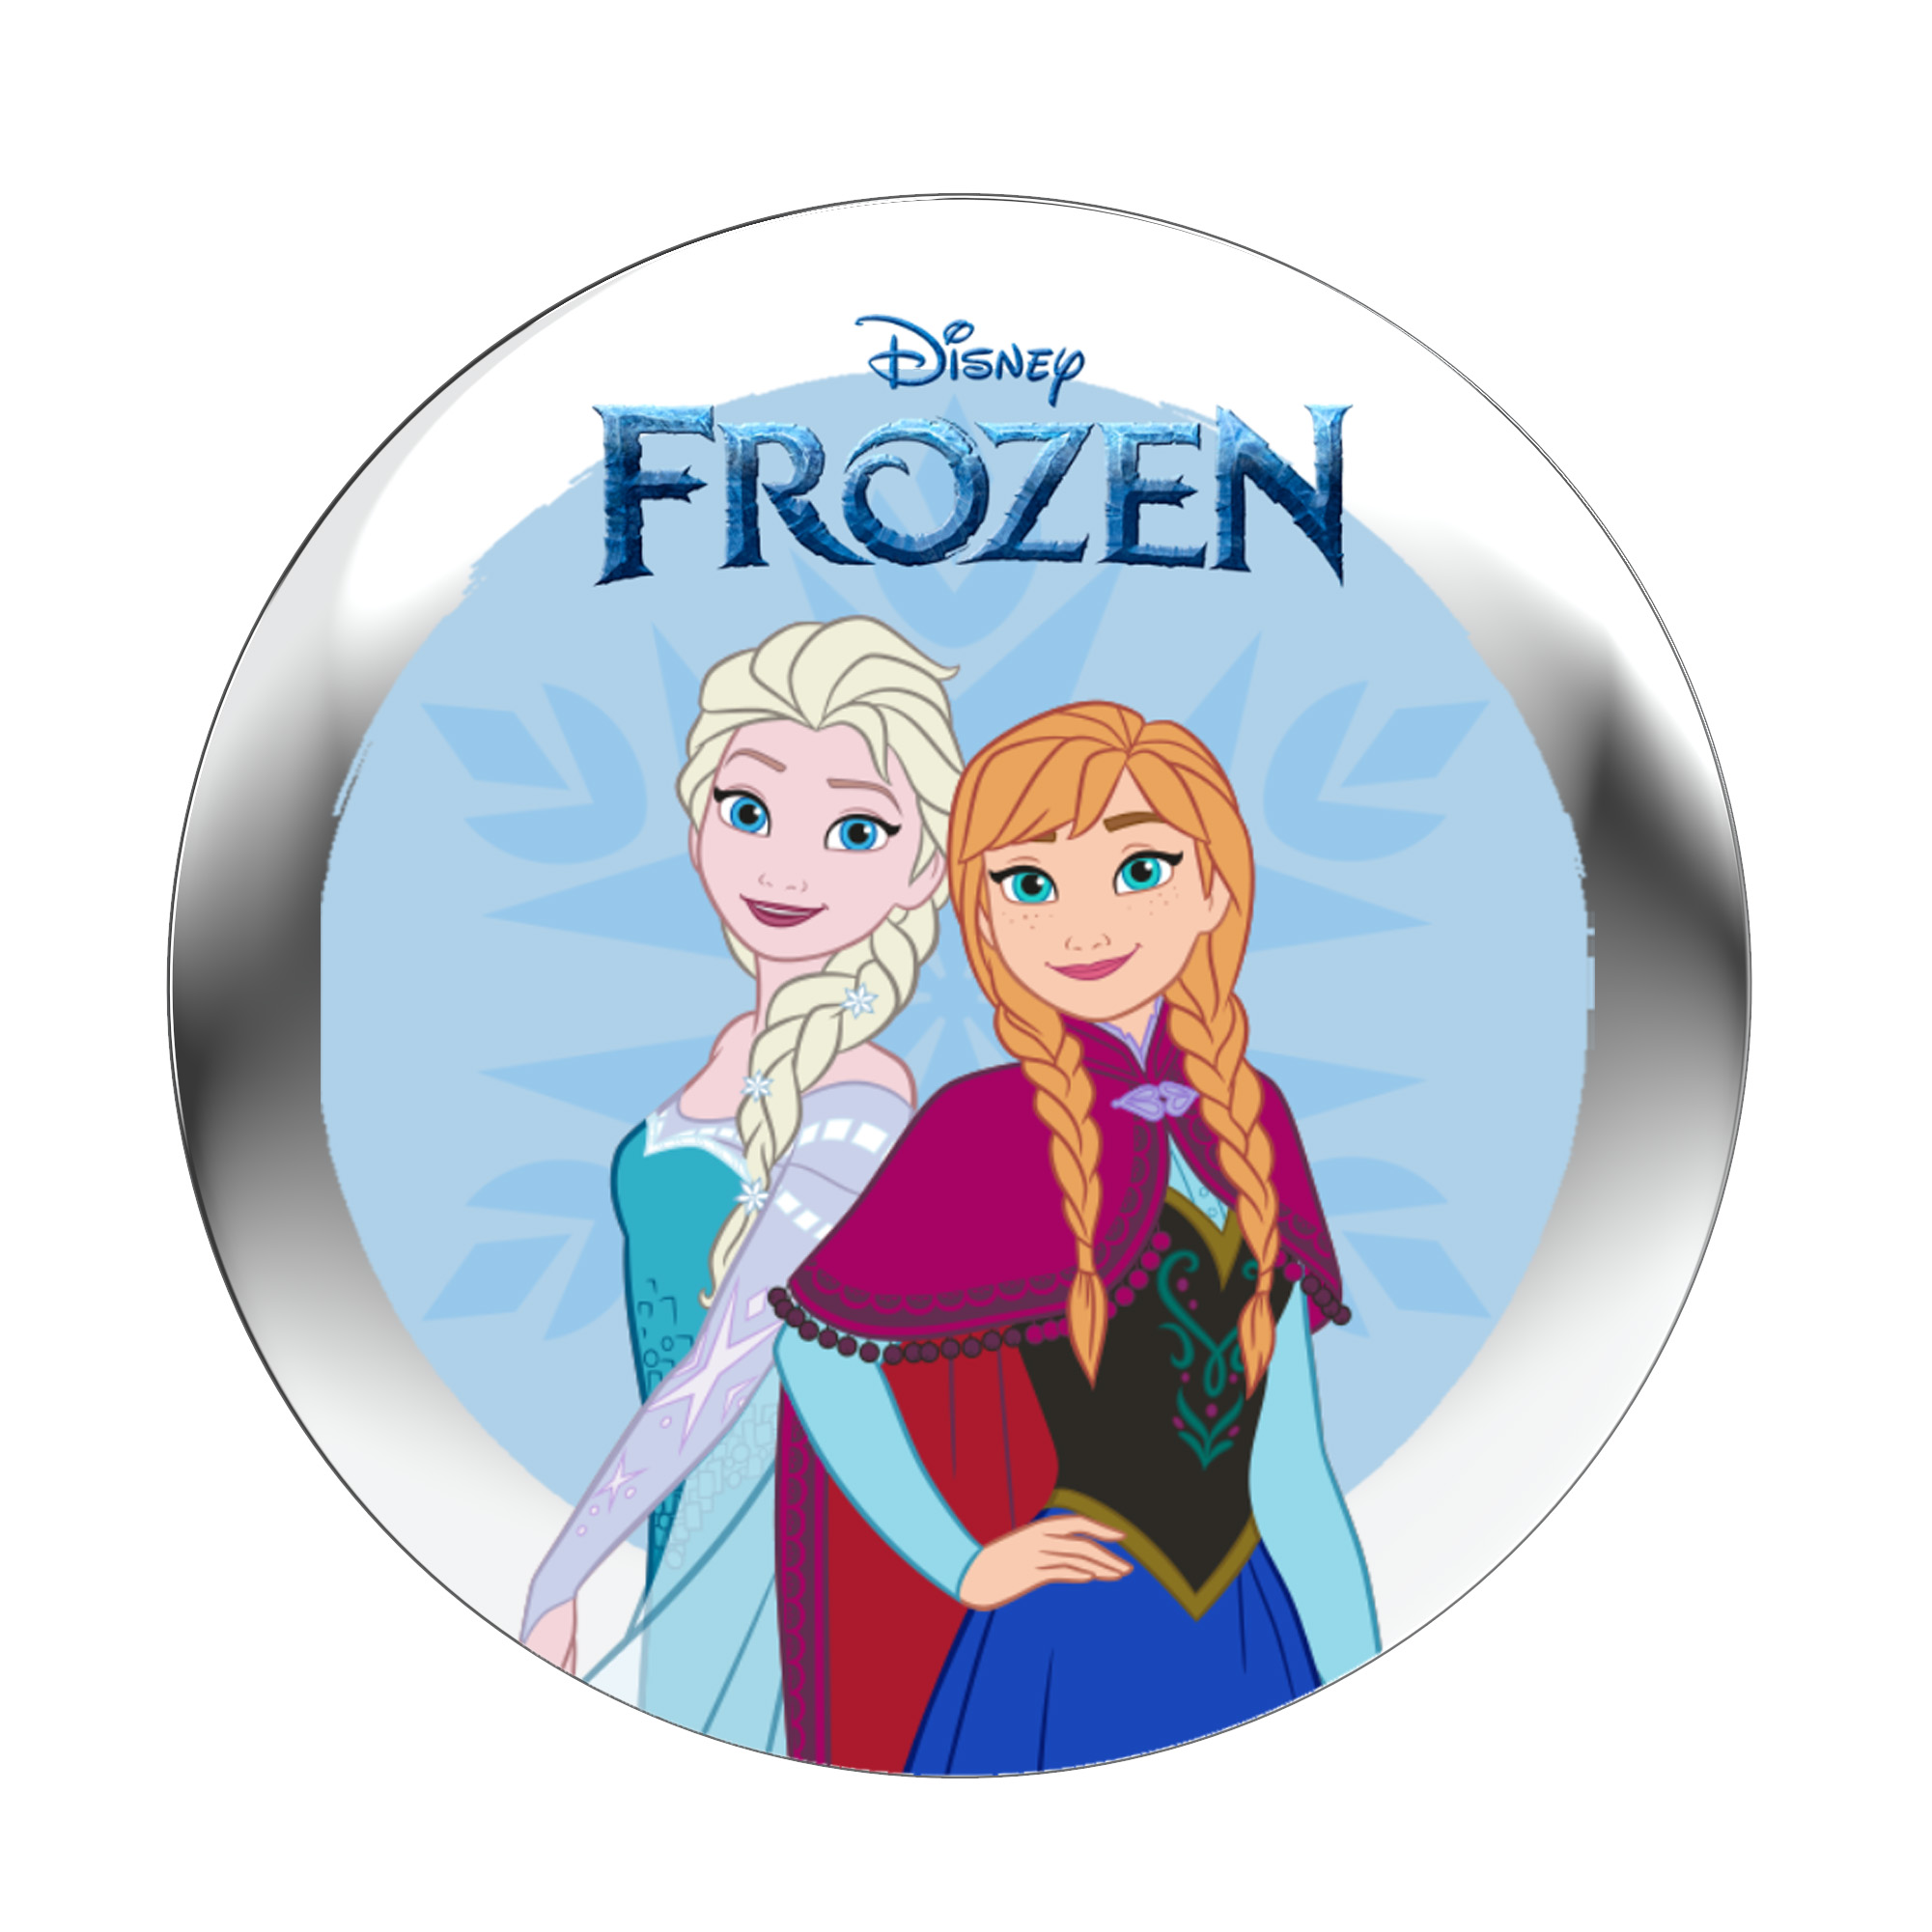 StoryPhones Disney \'Frozen\' StoryShield für - Audiogeschichte - (Download - Track) - Audio